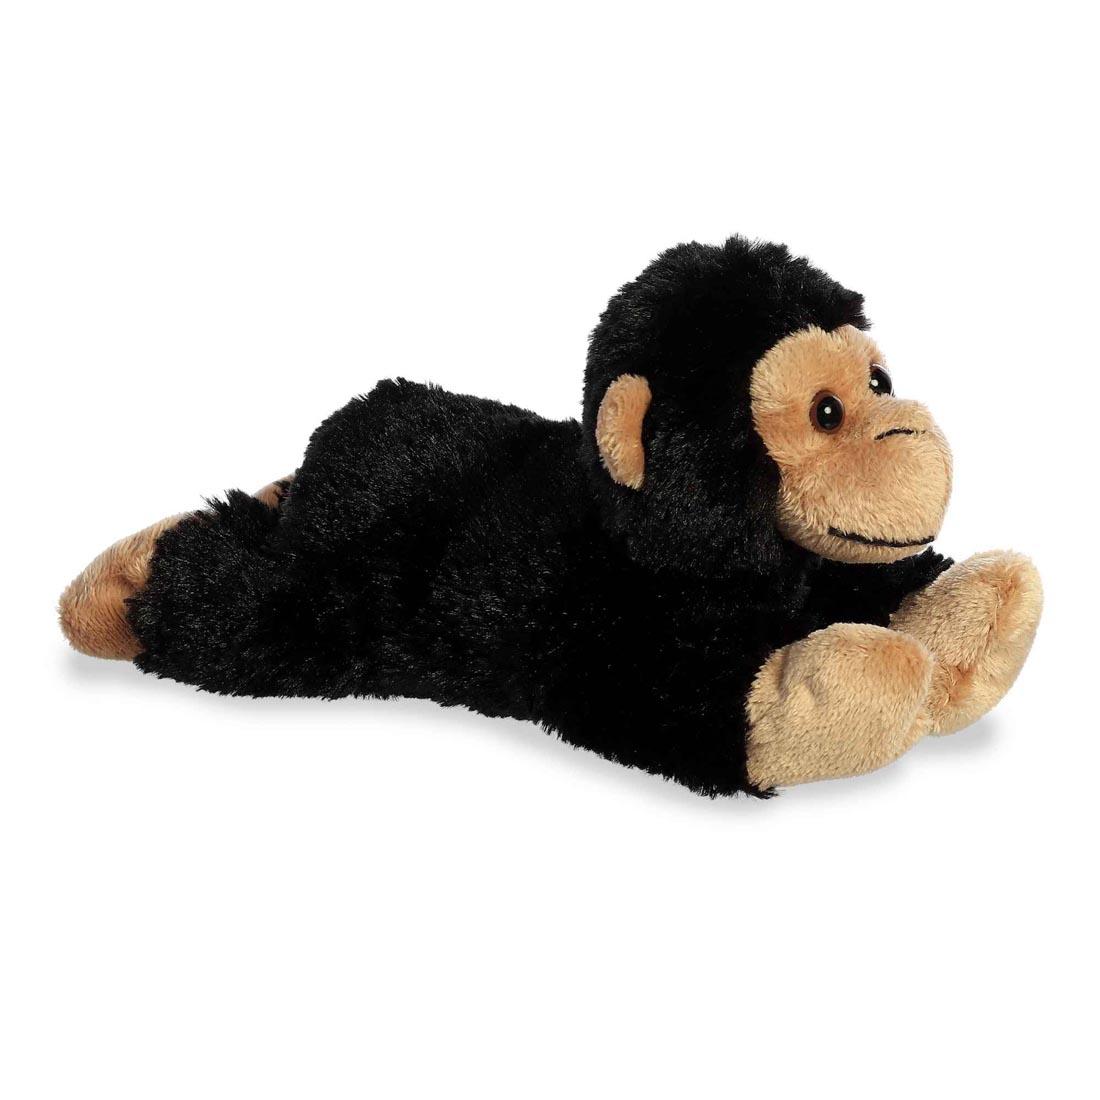 chimpanzee stuffed animal